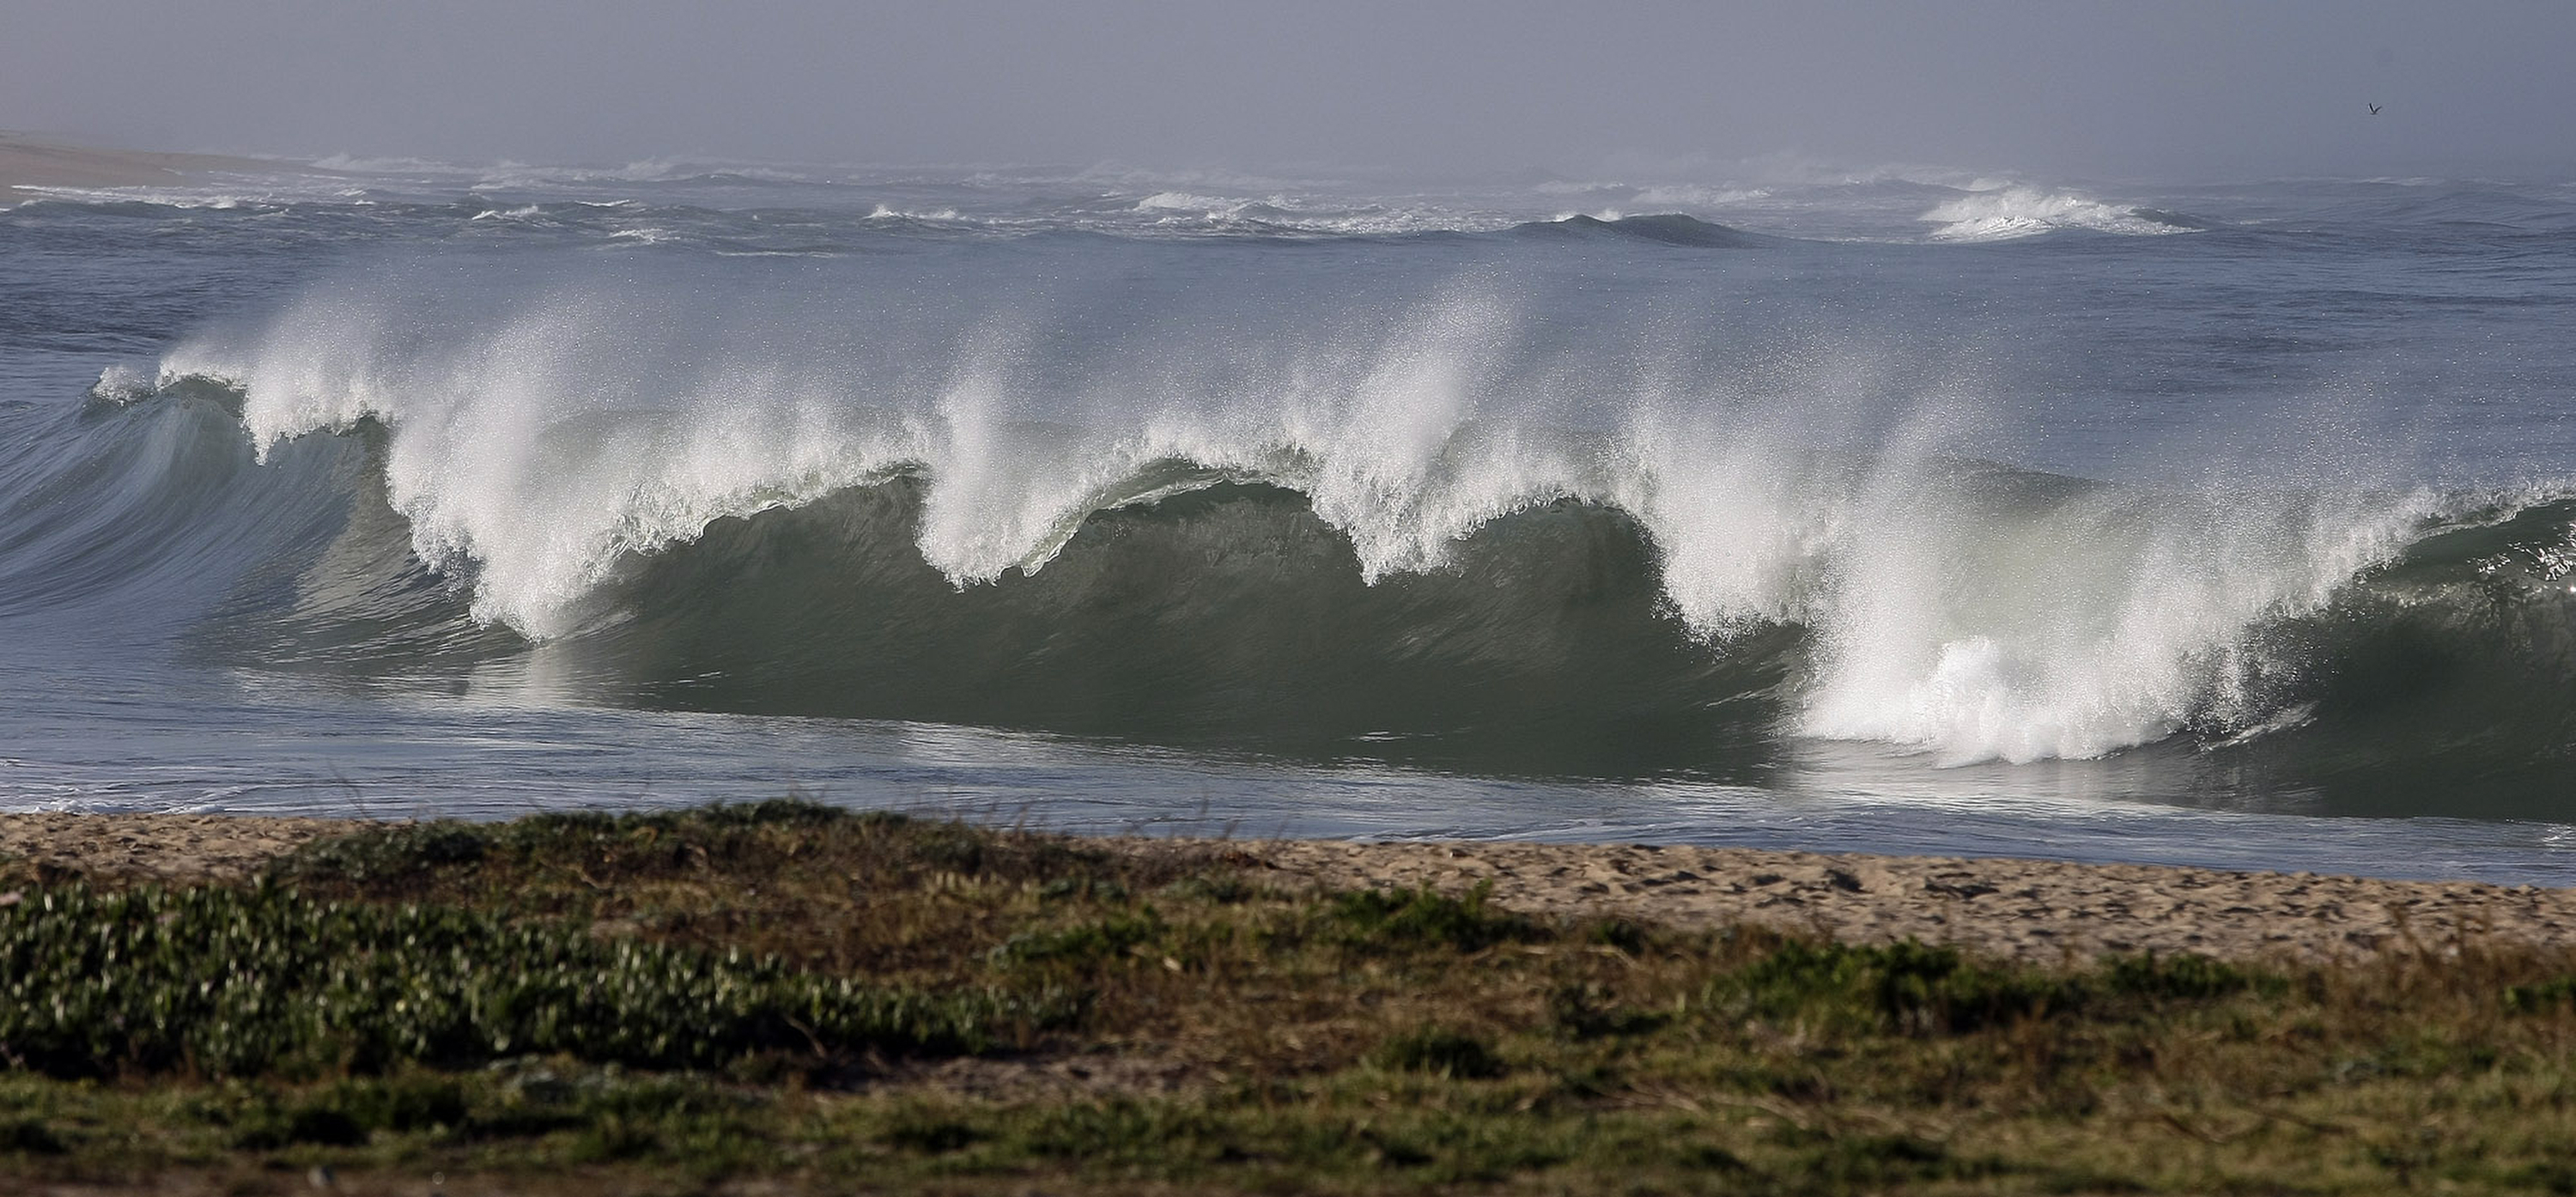 Partes de California recibieron una advertencia de tsunami, que resultó de un terremoto de 8.9 en Japón el 11 de marzo de 2011. En esta foto se ven grandes olas rompiendo en el lado sur del embarcadero de Moss Landing Harbor.